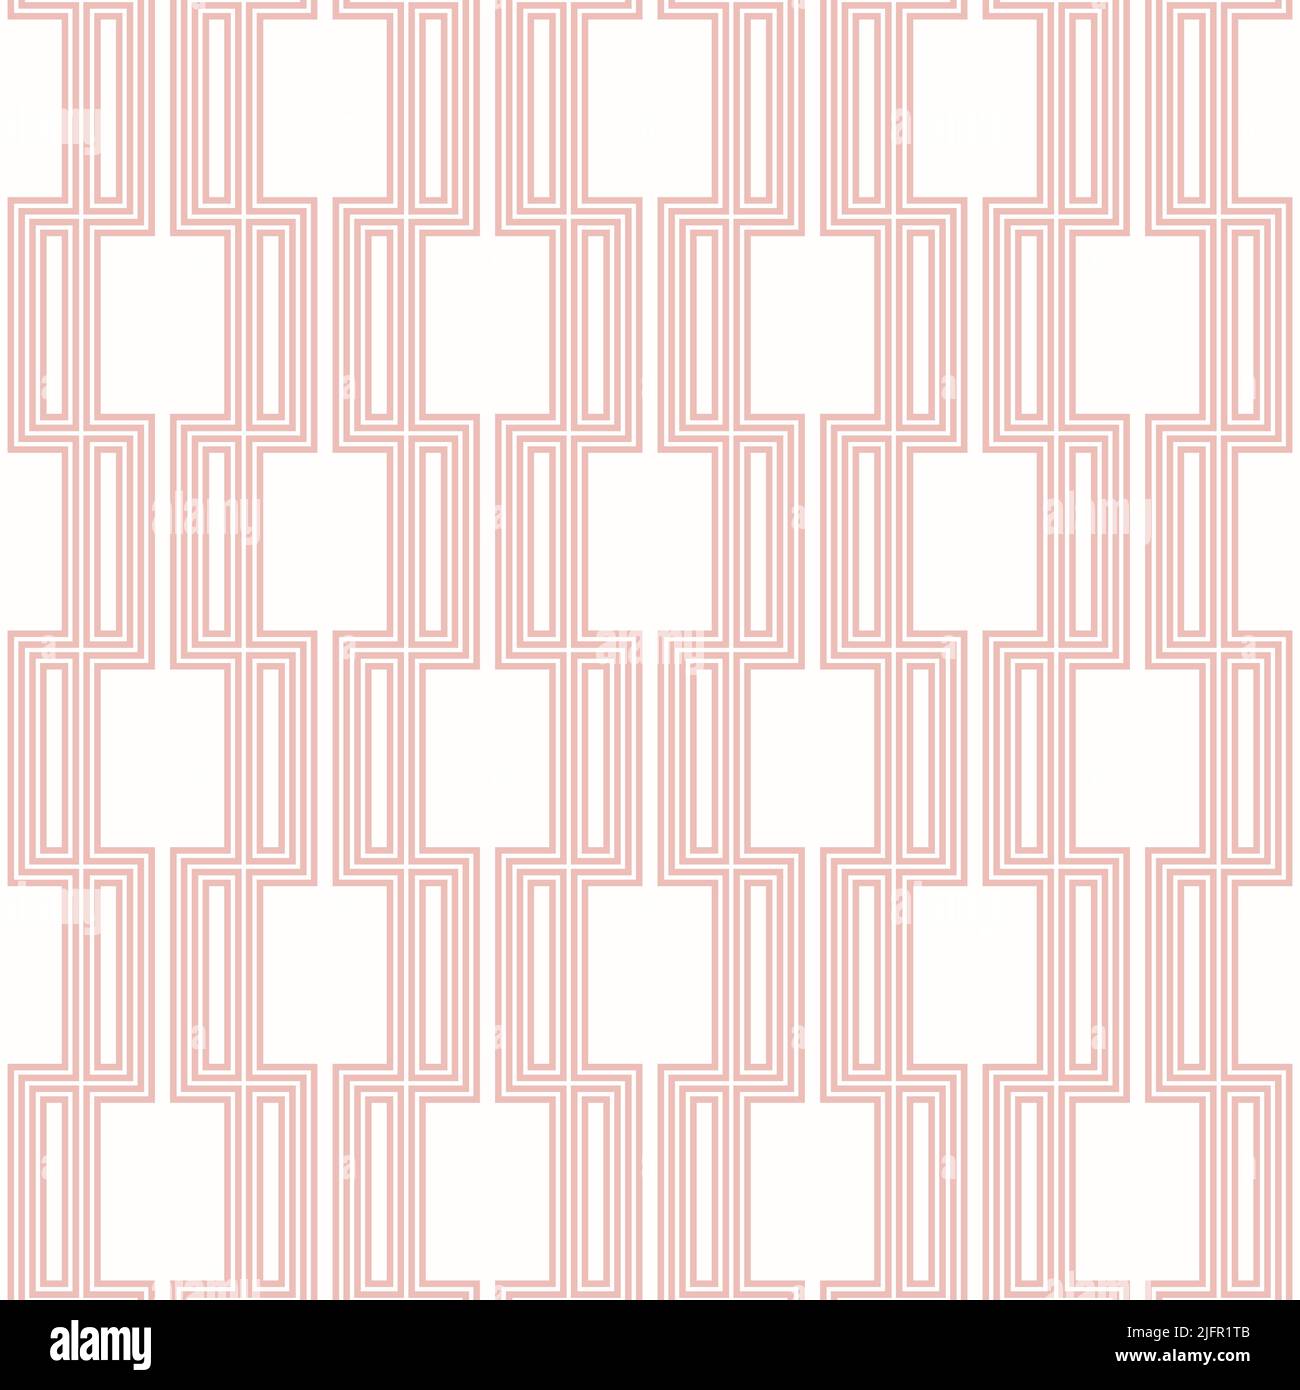 Sfondo senza interruzioni per i progetti. Moderno ornamento rosa e bianco. Schema geometrico astratto Foto Stock